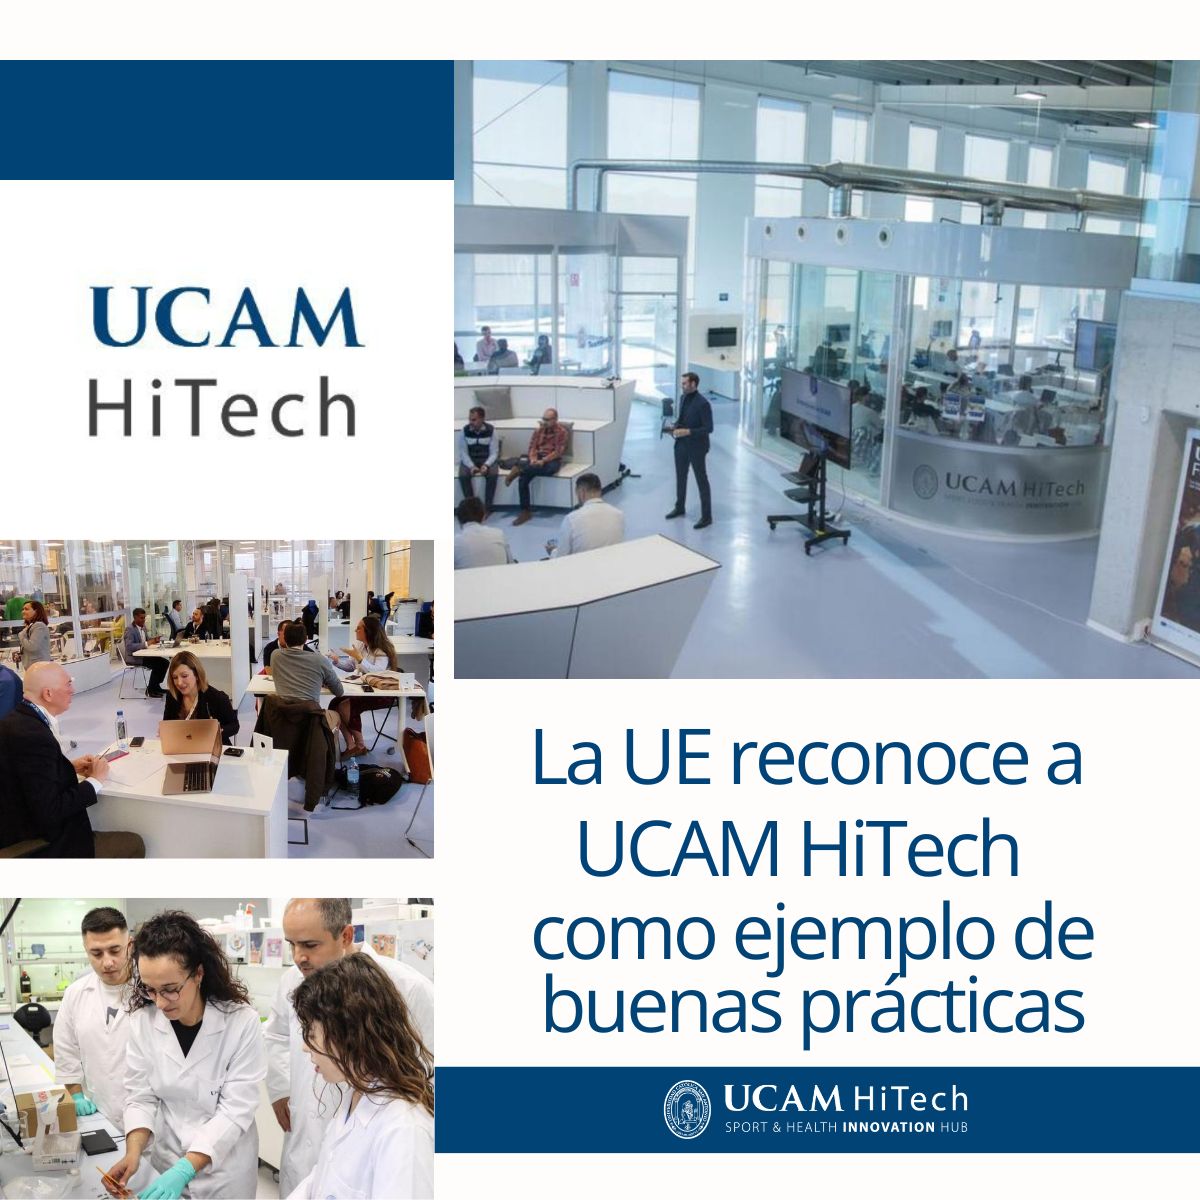 ✨ ¡UCAM HiTech reconocida por la Unión Europea! ✨ 🔍 Innovación que Marca la Diferencia: Queremos compartir con todos que UCAM HiTech, la incubadora de alta tecnología de la @UCAM ha sido distinguida por la Unión Europea como un ejemplo destacado de buenas prácticas. Este